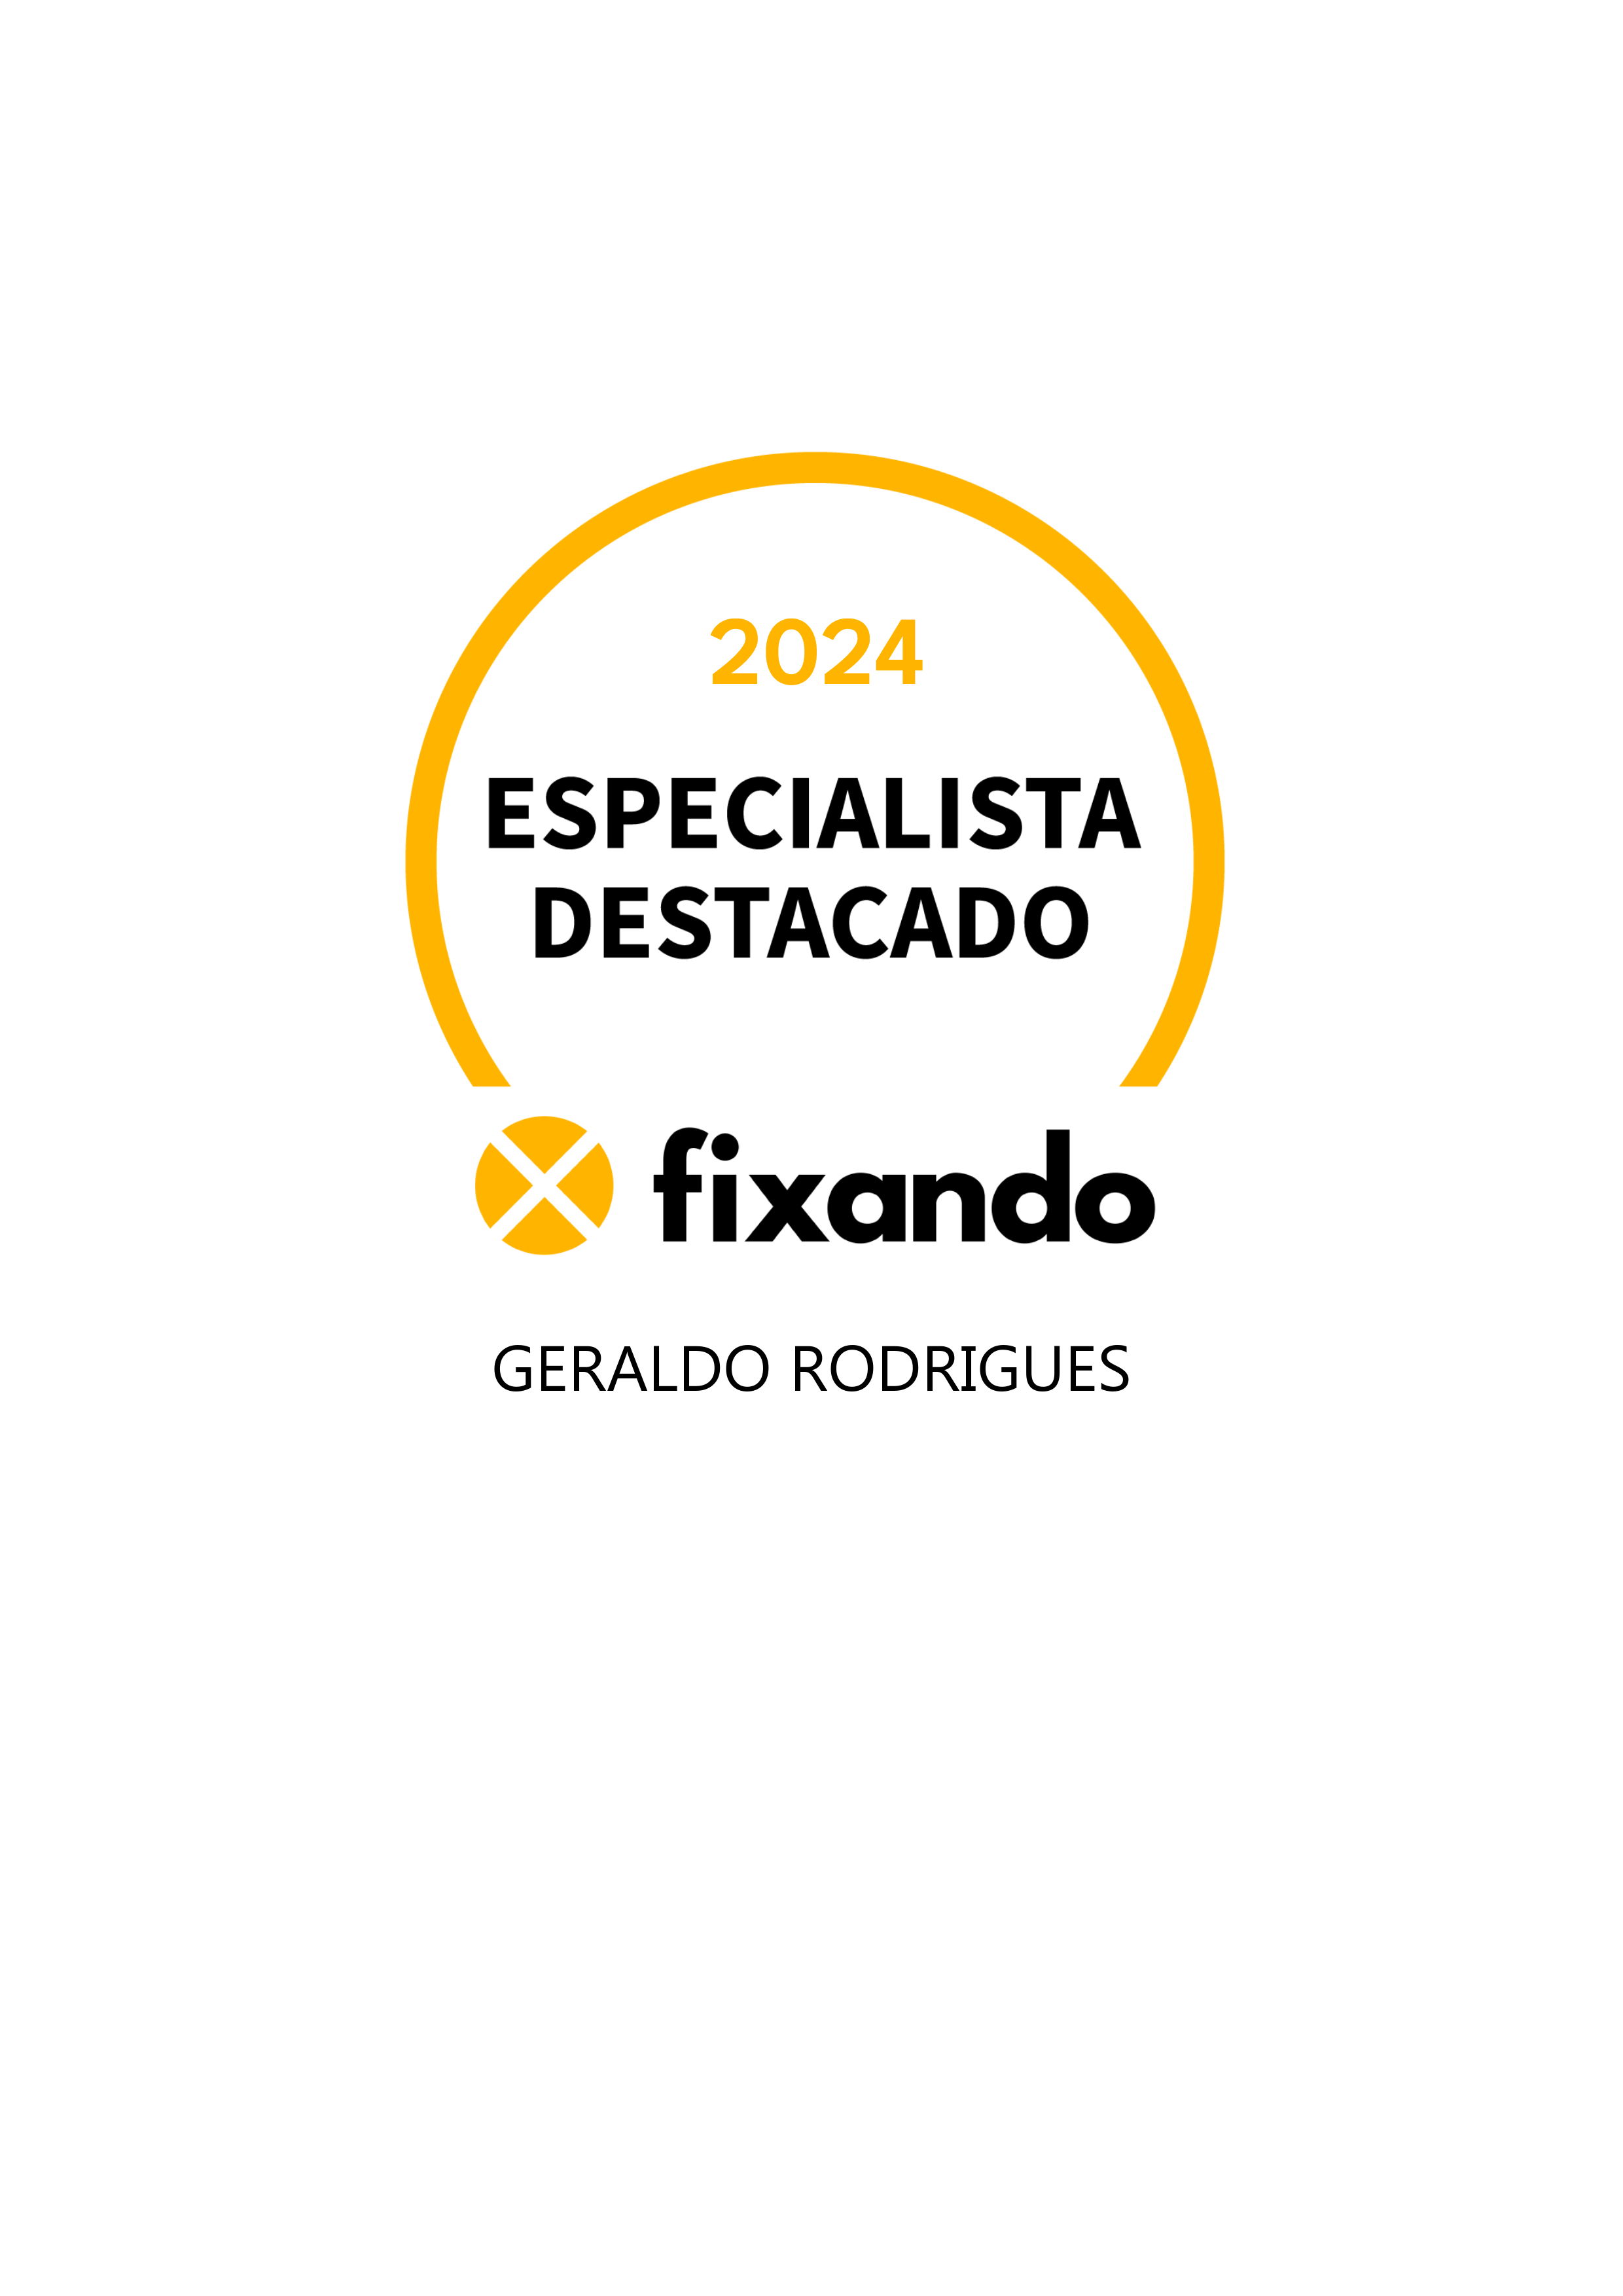 Geraldo Rodrigues - Santo Tirso - Instalação de Pavimento Vinílico ou Linóleo